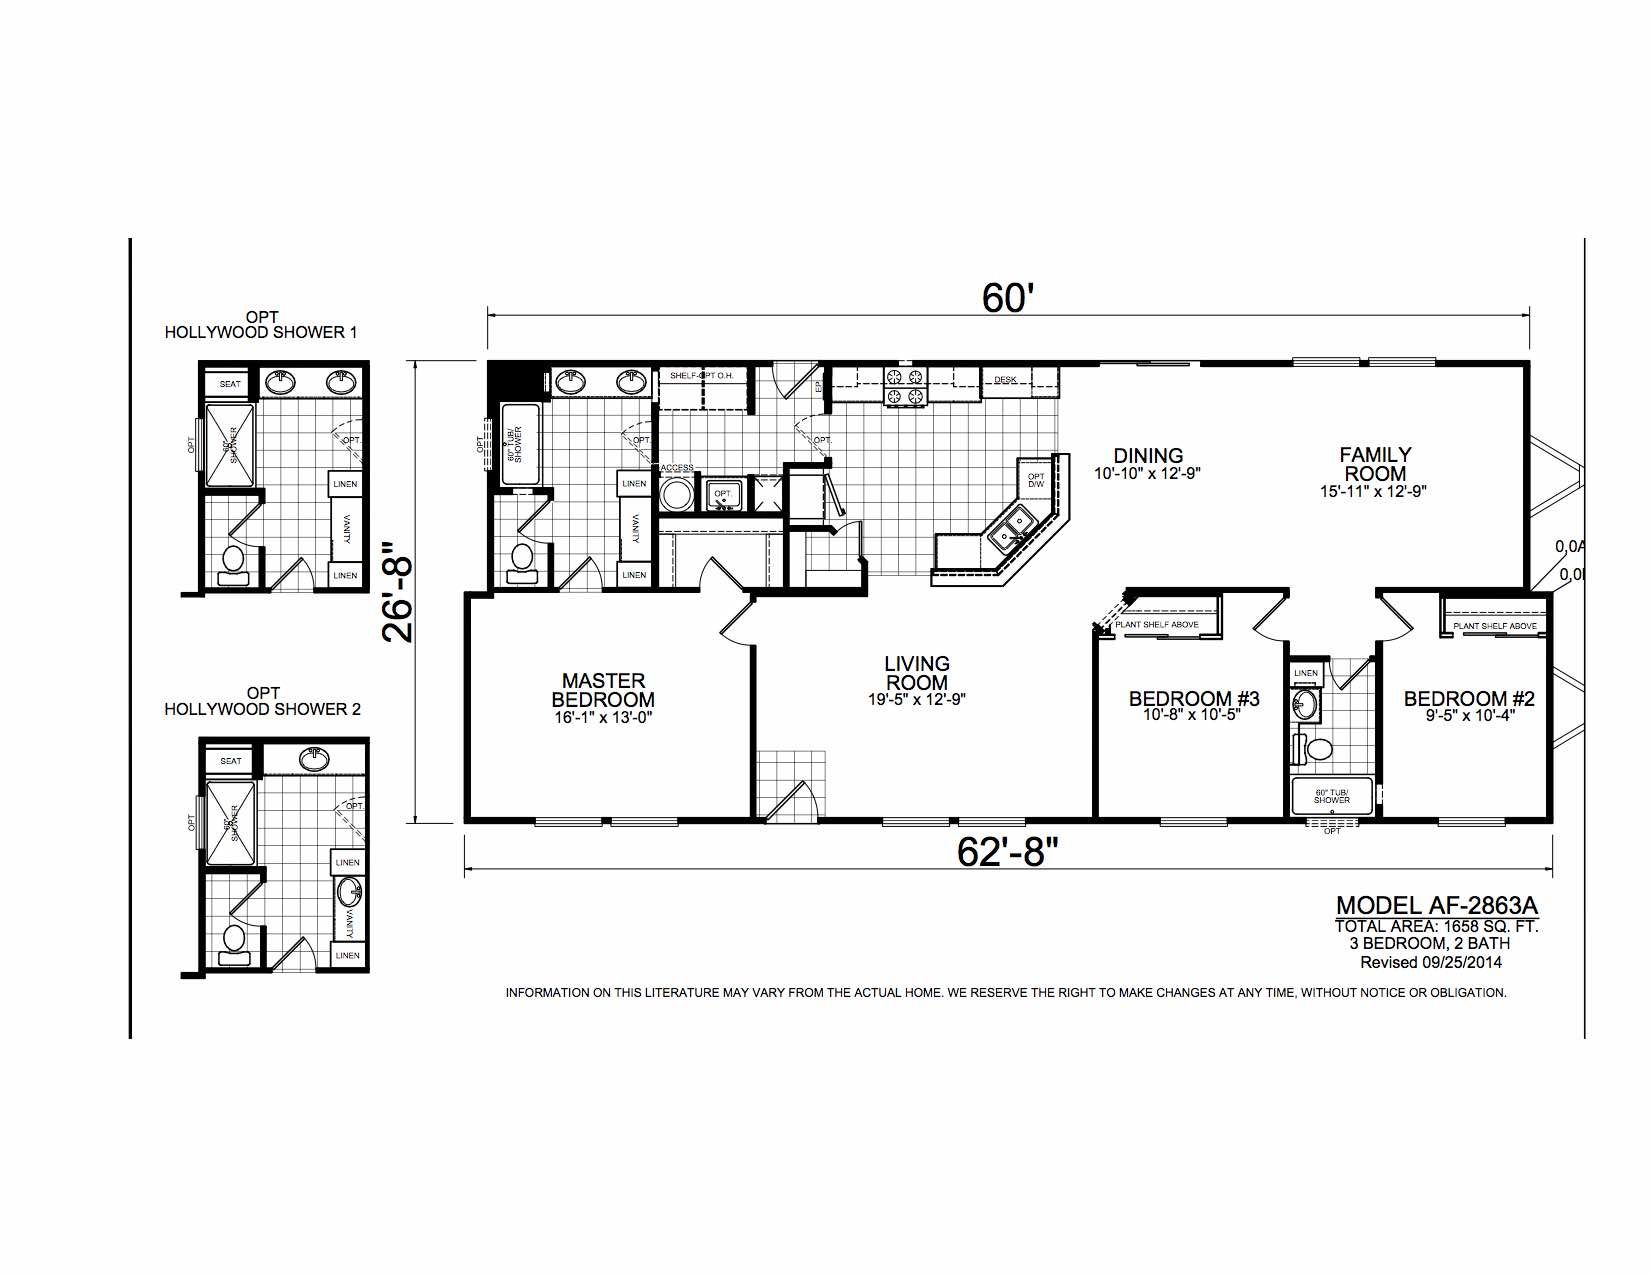 Homes Direct Modular Homes - Model AF2863A - Floorplan